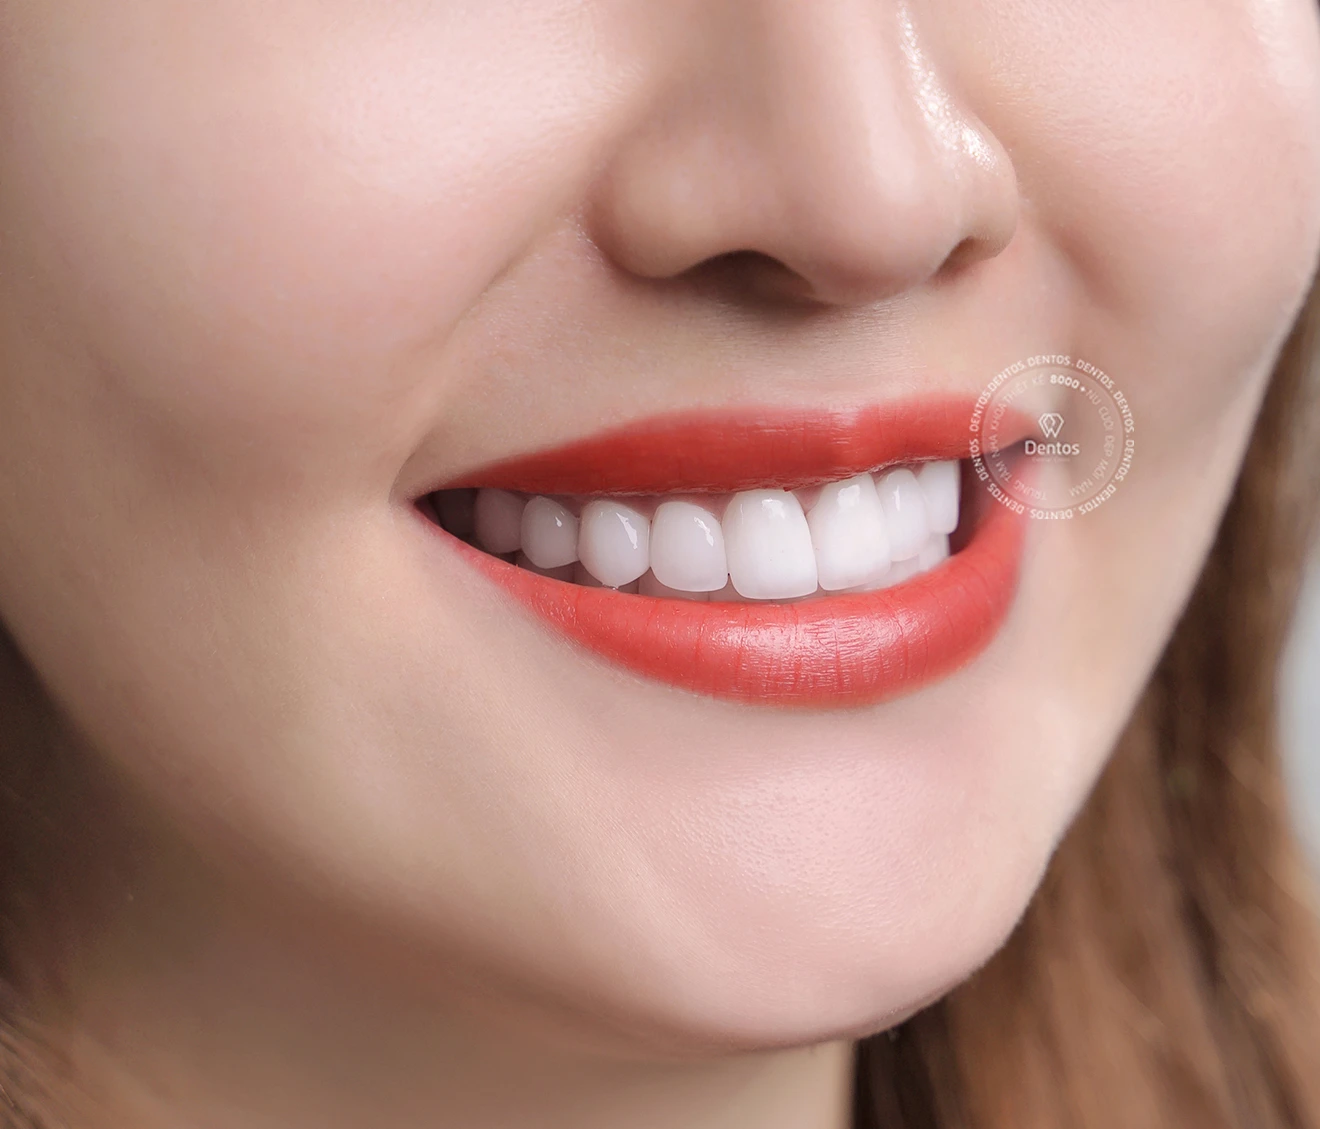 Các loại răng sứ tốt nhất trên thị trường - Chọn loại nào?